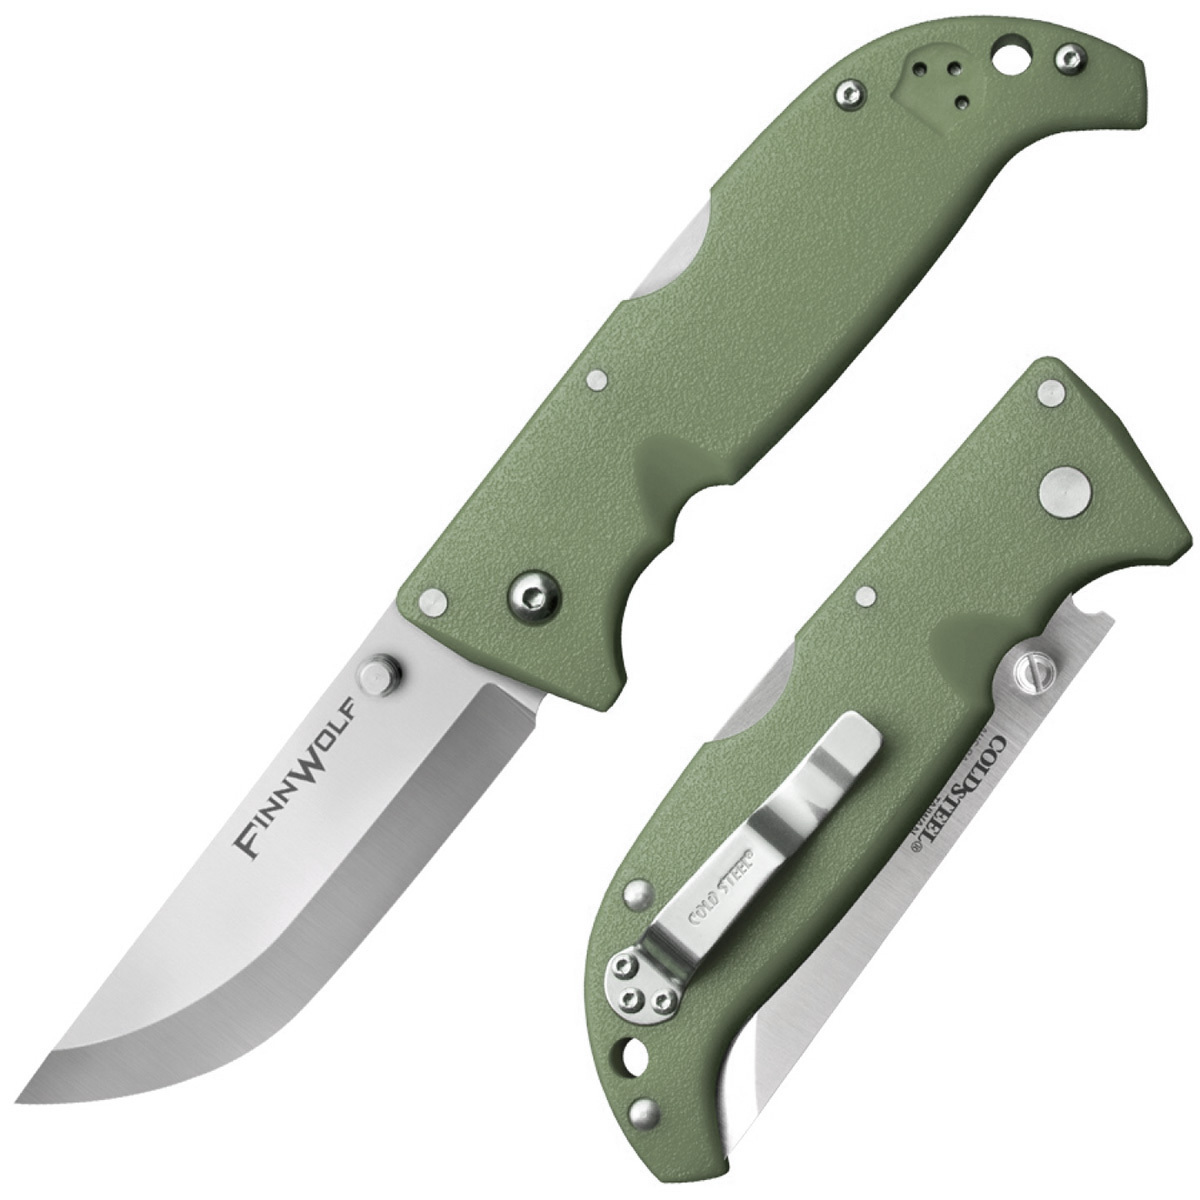 Складной нож Finn Wolf - Cold Steel 20NPFZ, сталь AUS-8A, рукоять Grivory® (высококачественный пластик), Зеленый, блистер - фото 1